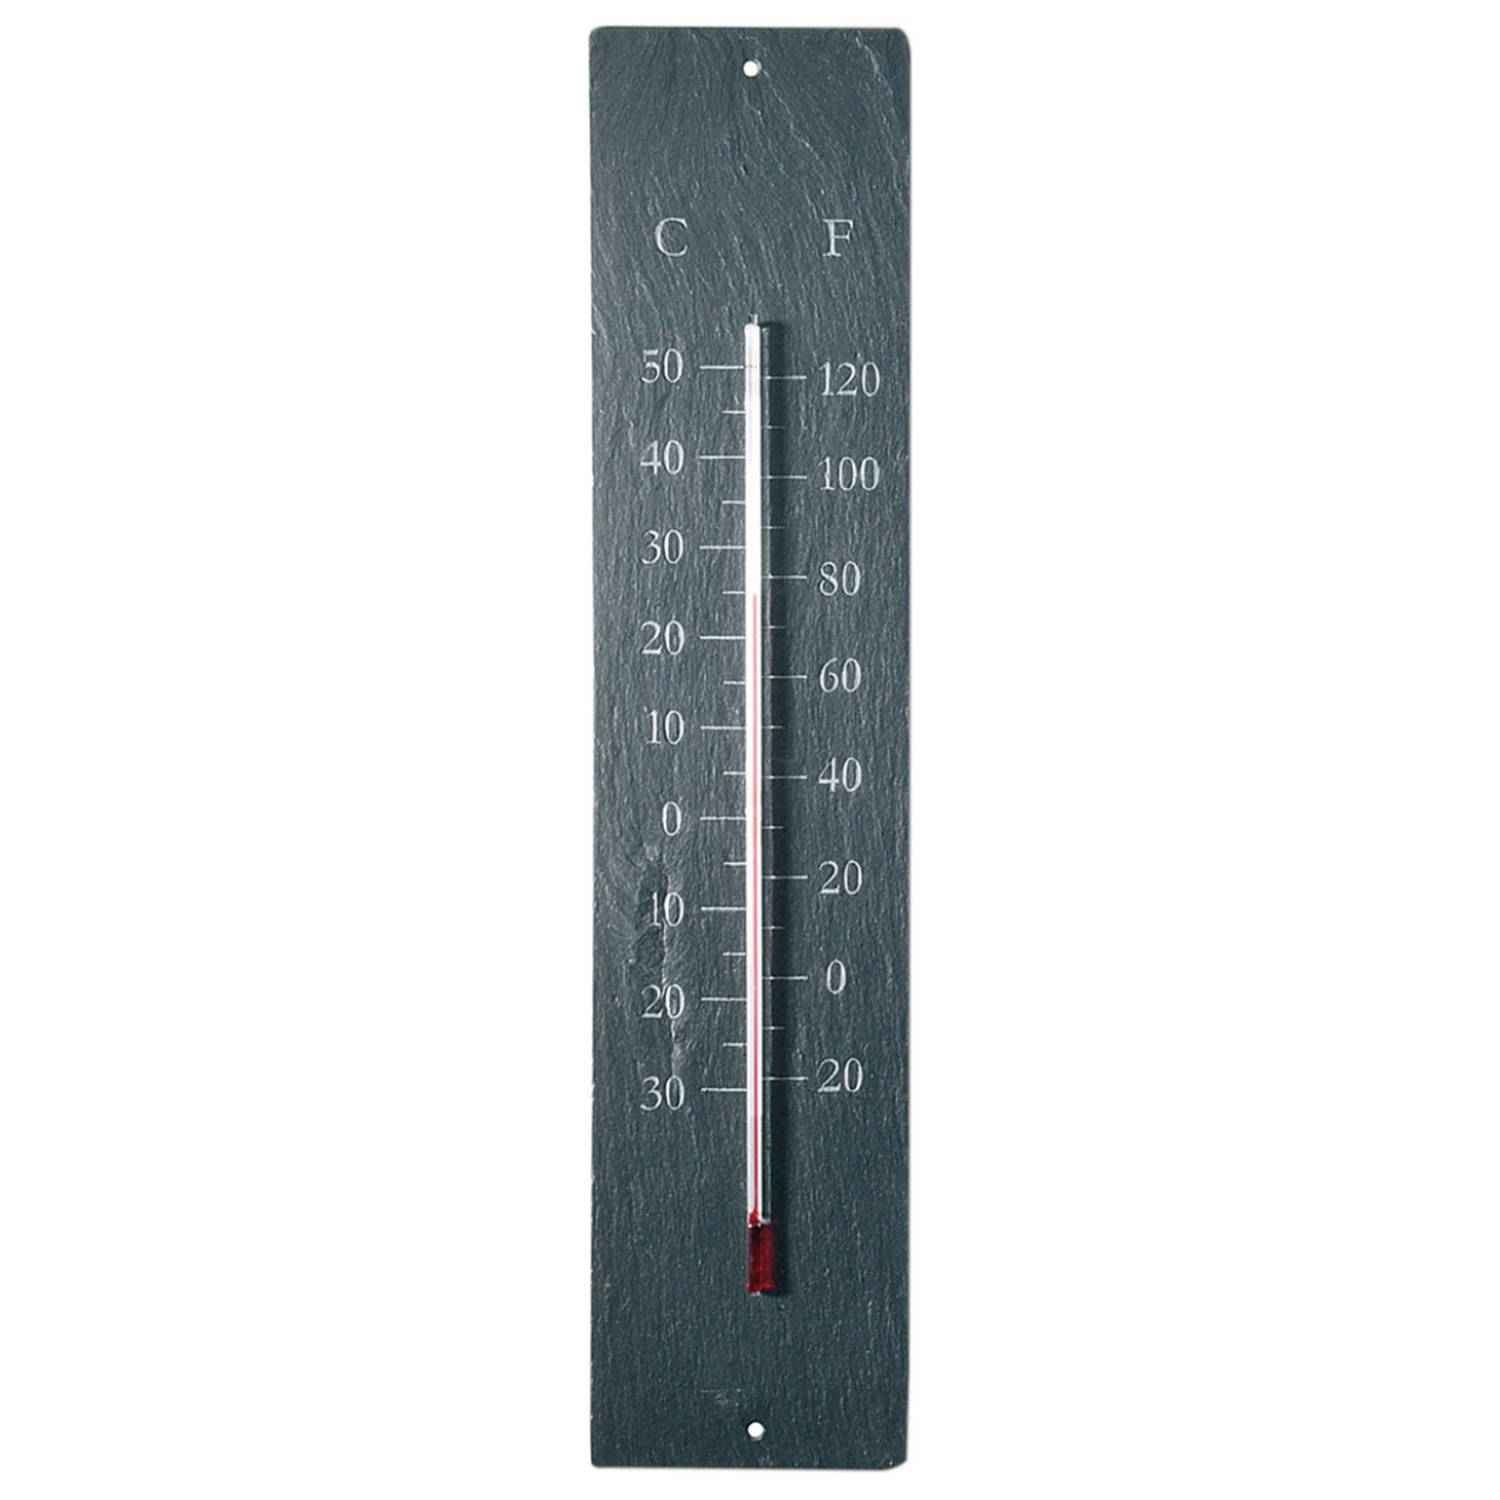 Omgeving Geaccepteerd Vooravond Esschert Design buitenthermometer 10 x 45 cm leisteen grijs | Blokker